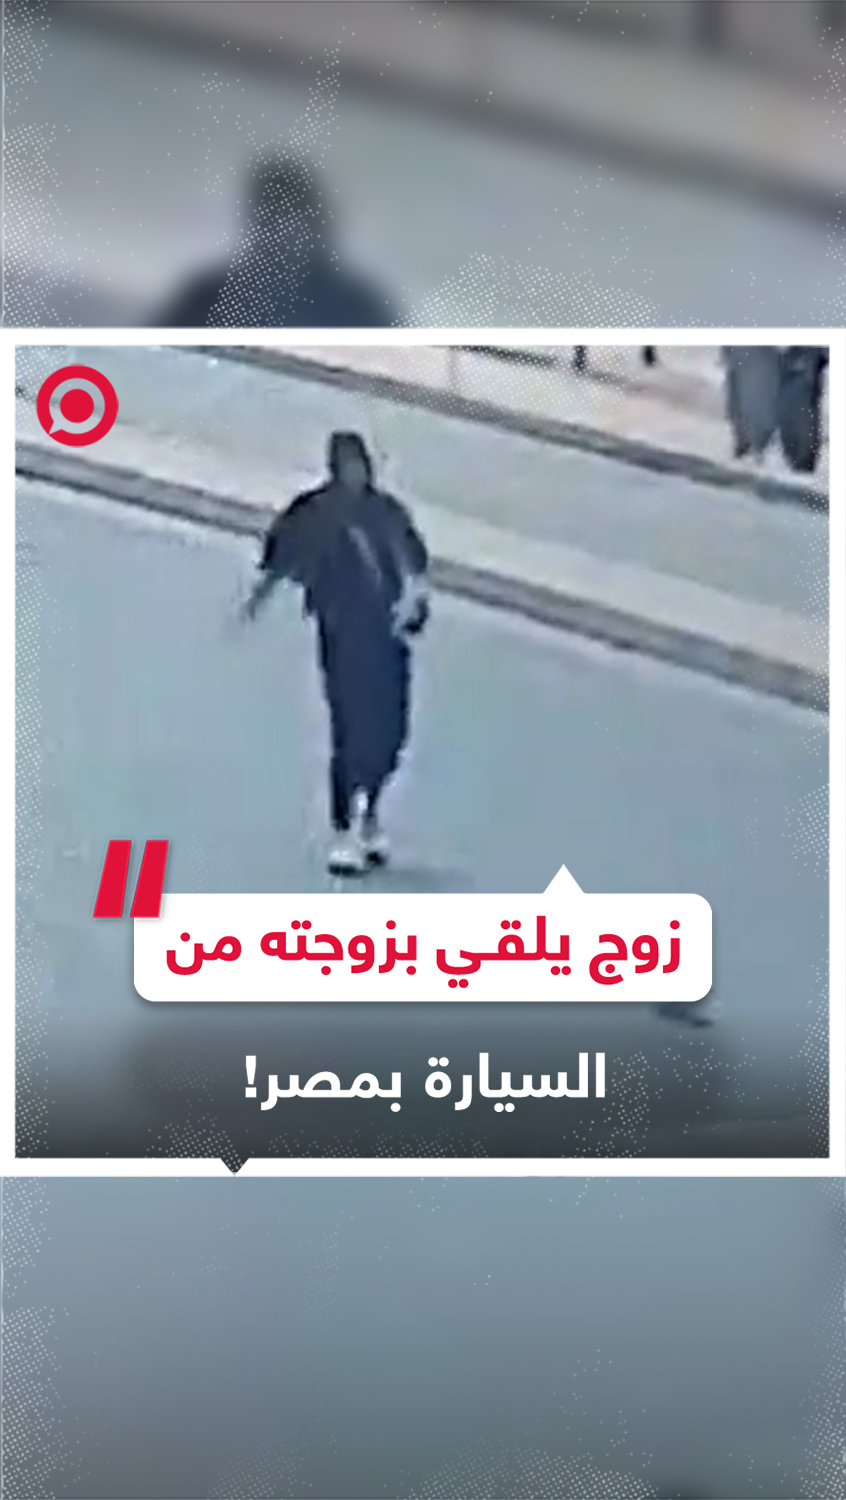 زوج يلقي بزوجته من السيارة بسبب خلافات عائلية في مصر